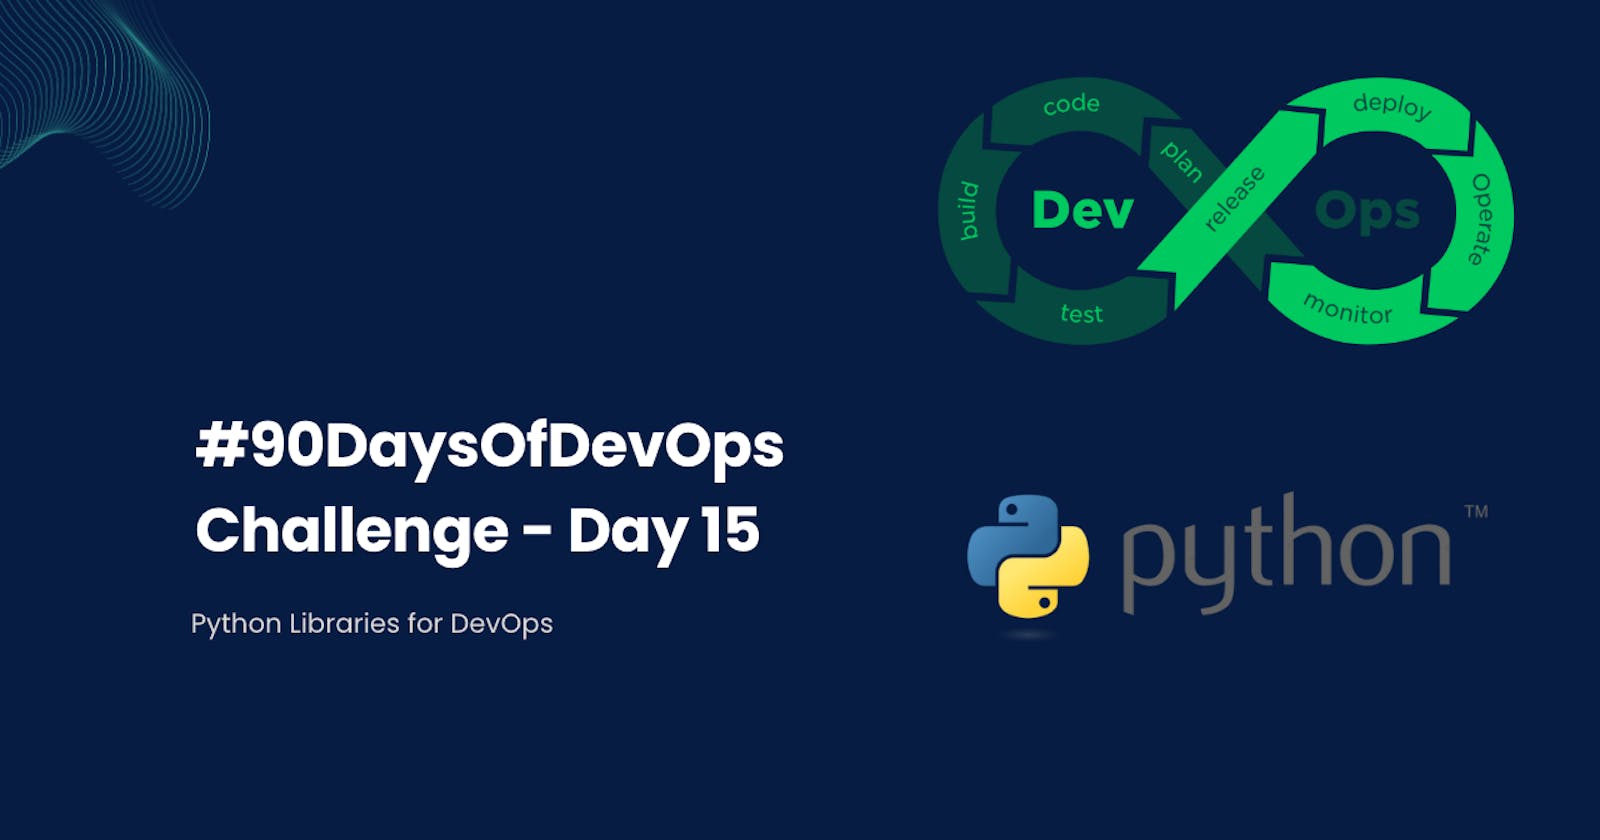 #90DaysOfDevOps Challenge - Day 15 - Python Libraries for DevOps